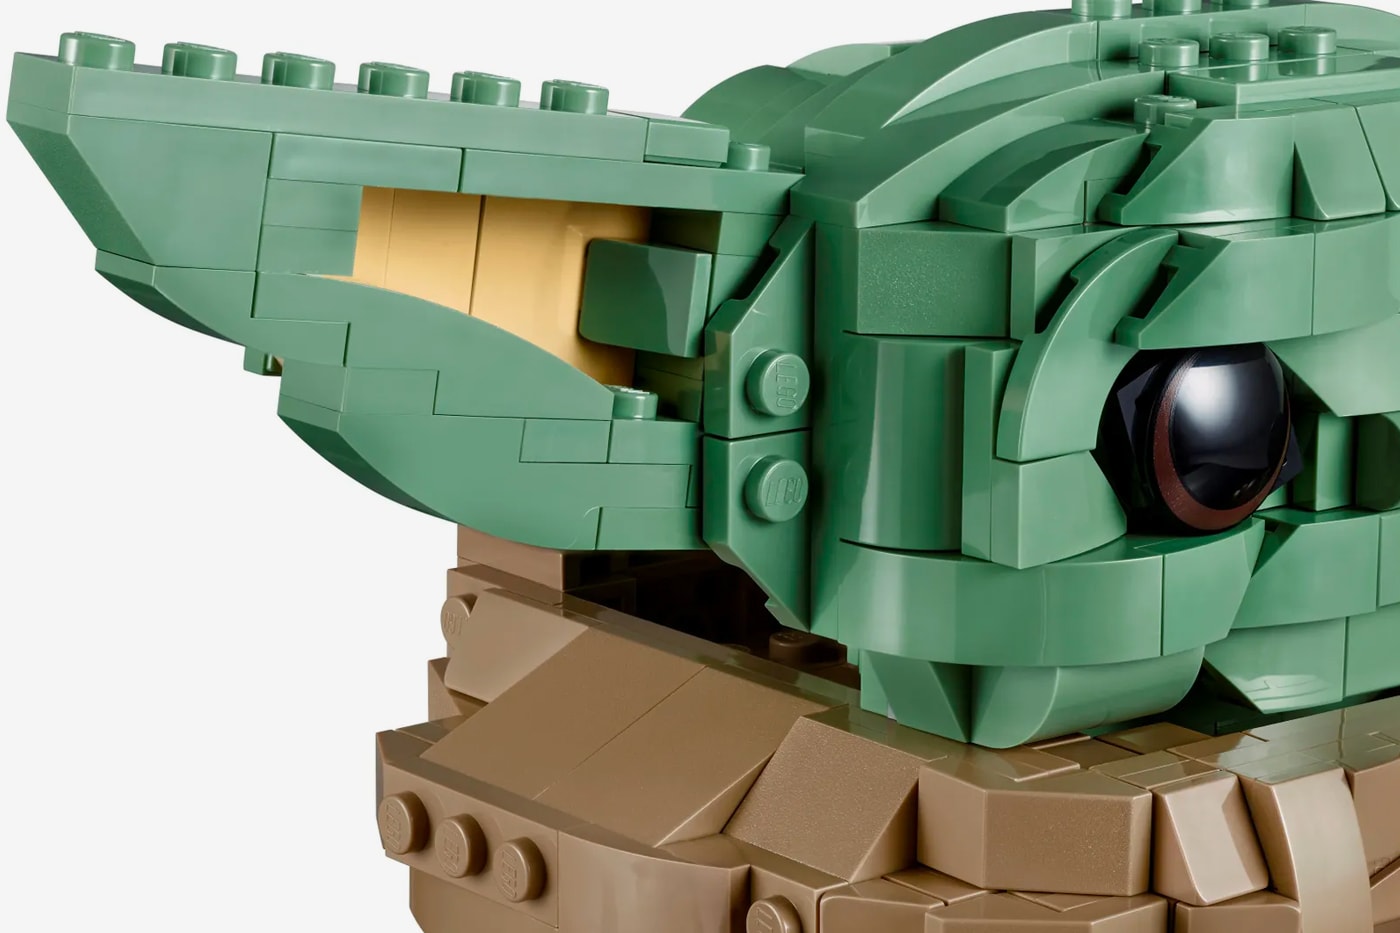 レゴ LEGO® が『スター・ウォーズ』屈指の可愛さを誇るベビーヨーダを再現したプロダクト発売 Lego Star Wars The Mandalorian The Child 75318 Release Yoda Star Wars Lucafilms toys figures bricks lightsabers Tv series season 2 